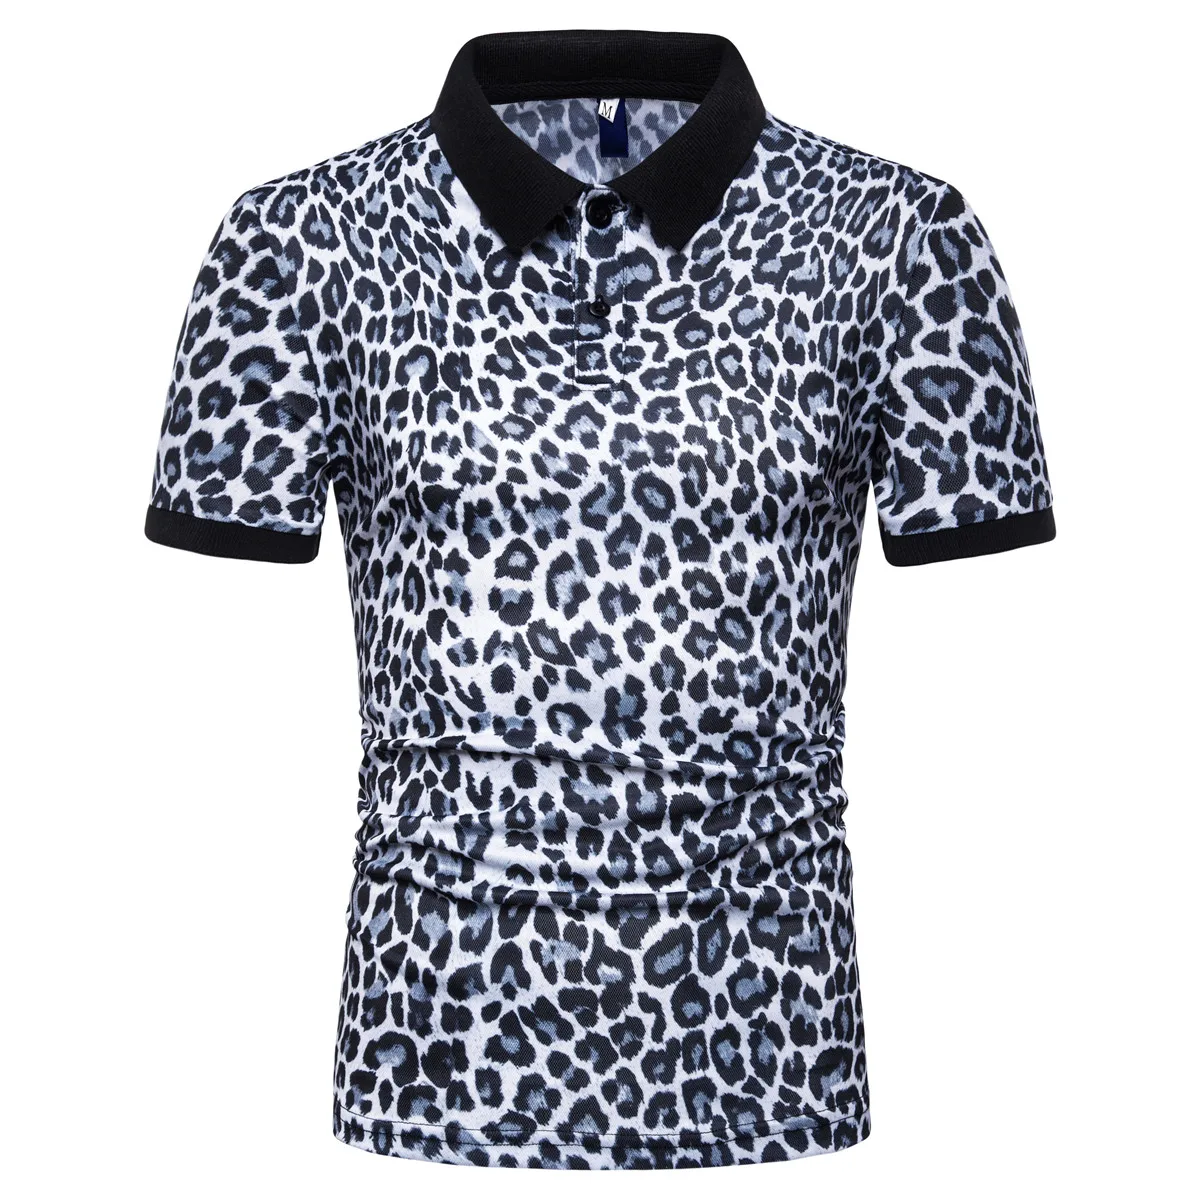 Miicoopie мужские рубашки поло с коротким рукавом модные повседневные брендовые рубашки поло с леопардовым принтом